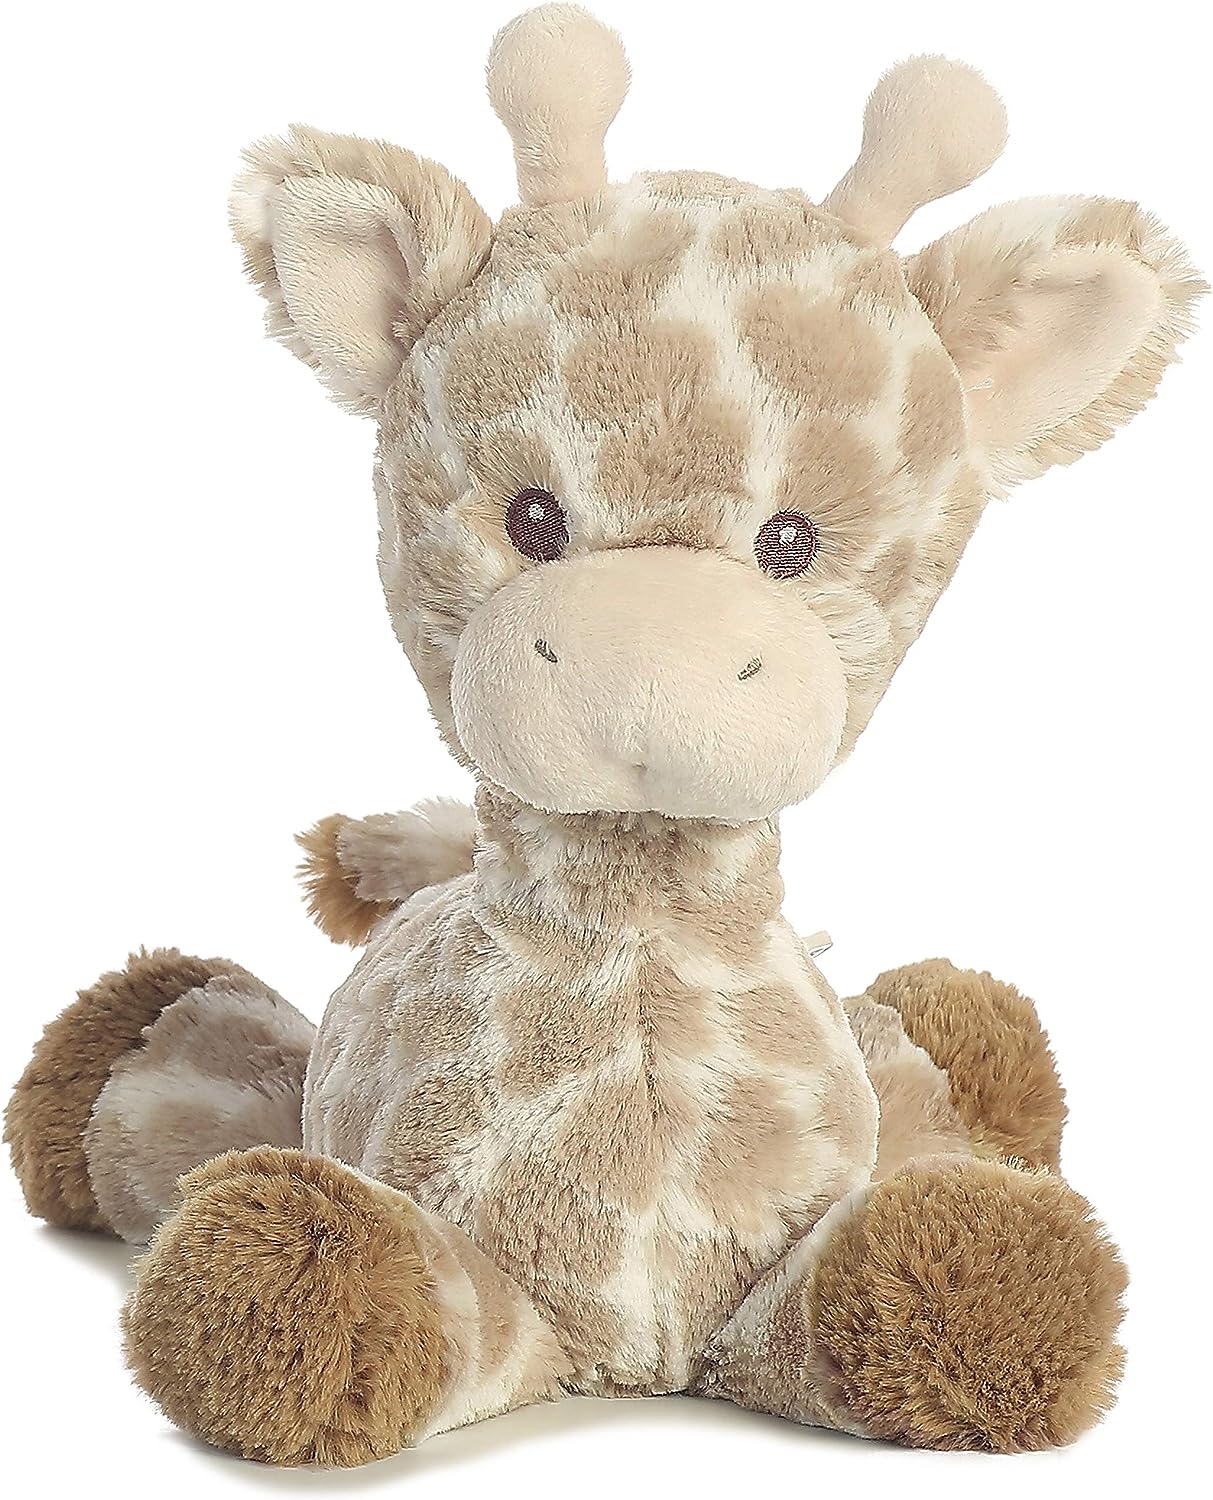 Adora Baby Tot Gentle Giraffe - 8.5